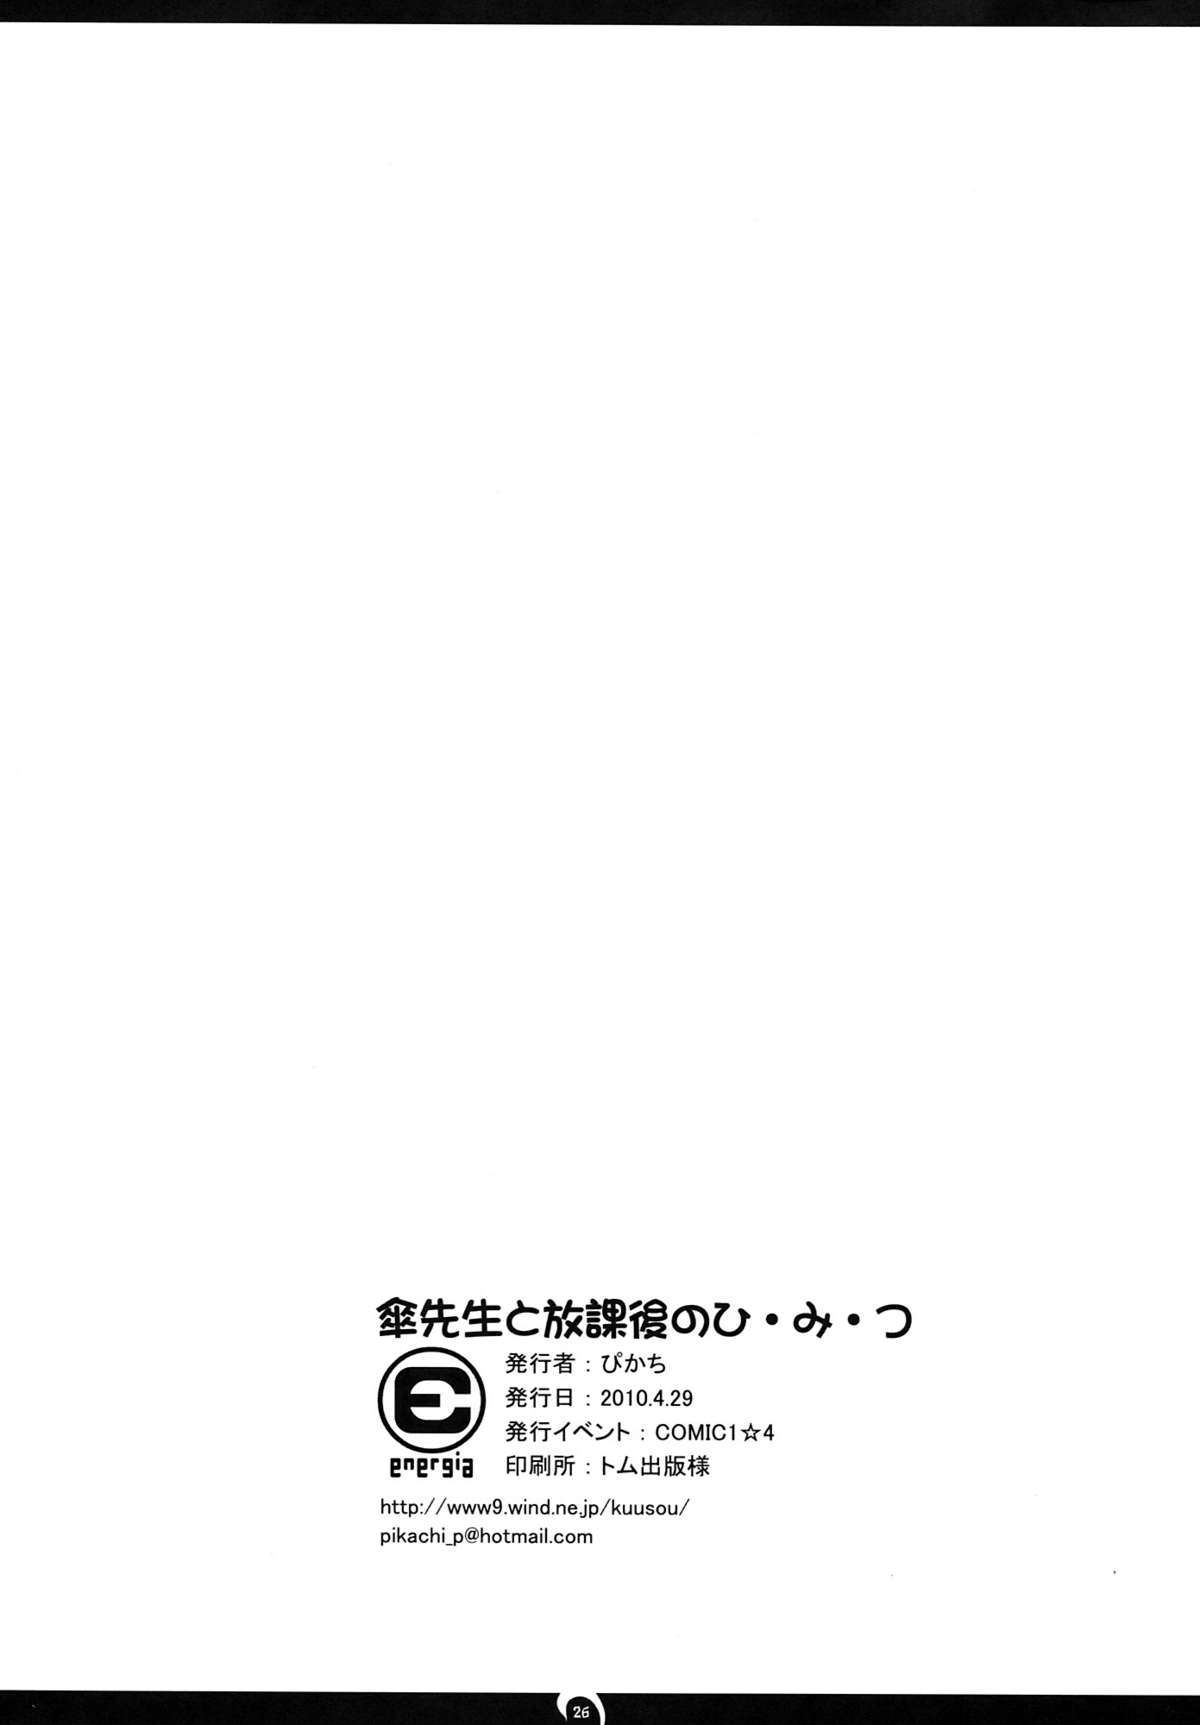 (COMIC1☆4) (同人誌) [えねるぎあ (ぴかち)] 傘先生と放課後のひ・み・つ (ヒャッコ)